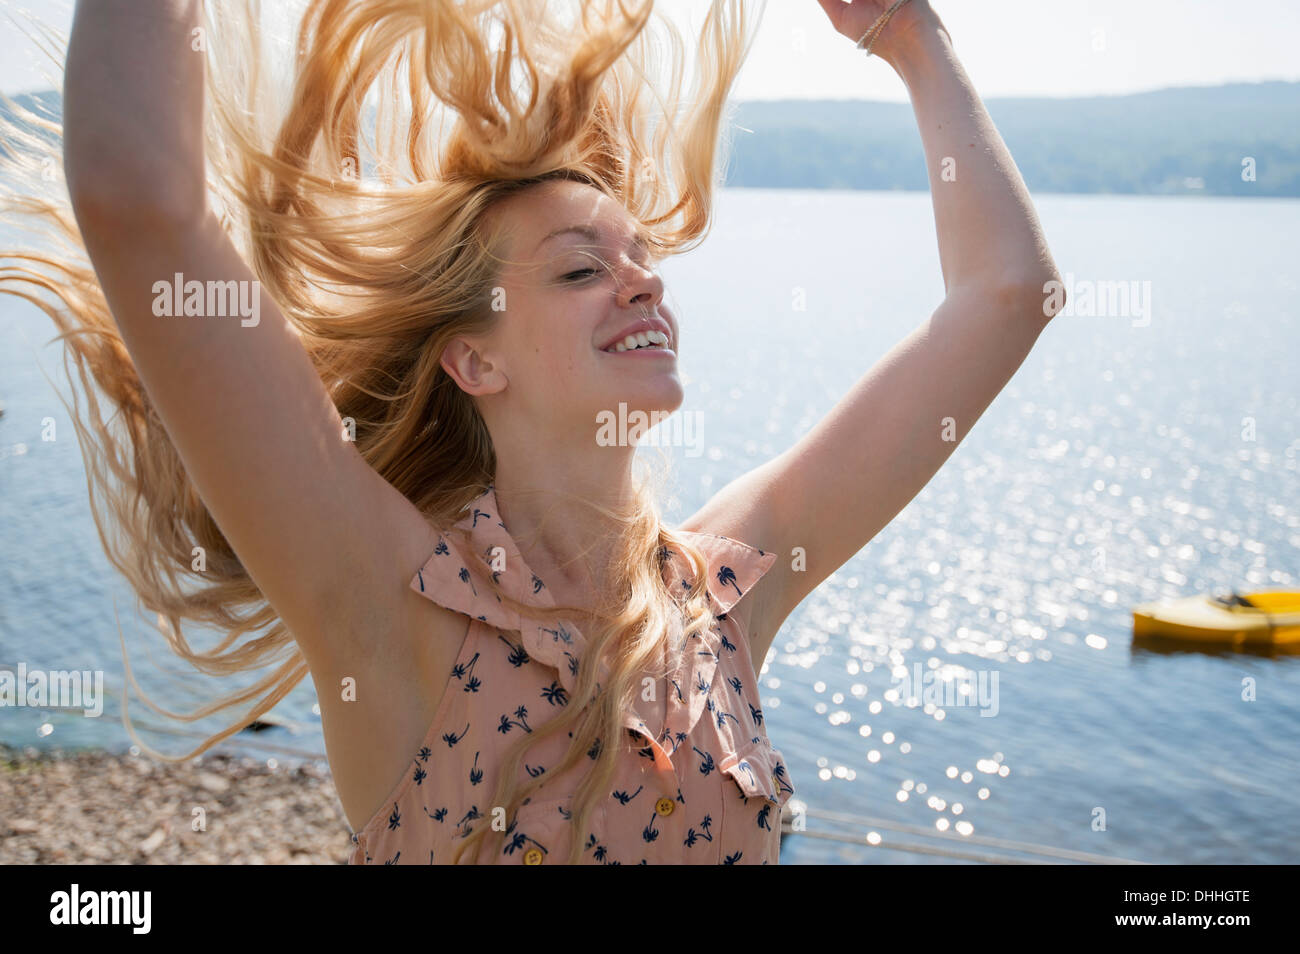 Ritratto di giovane donna con capelli lunghi biondi e a braccia alzate Foto Stock